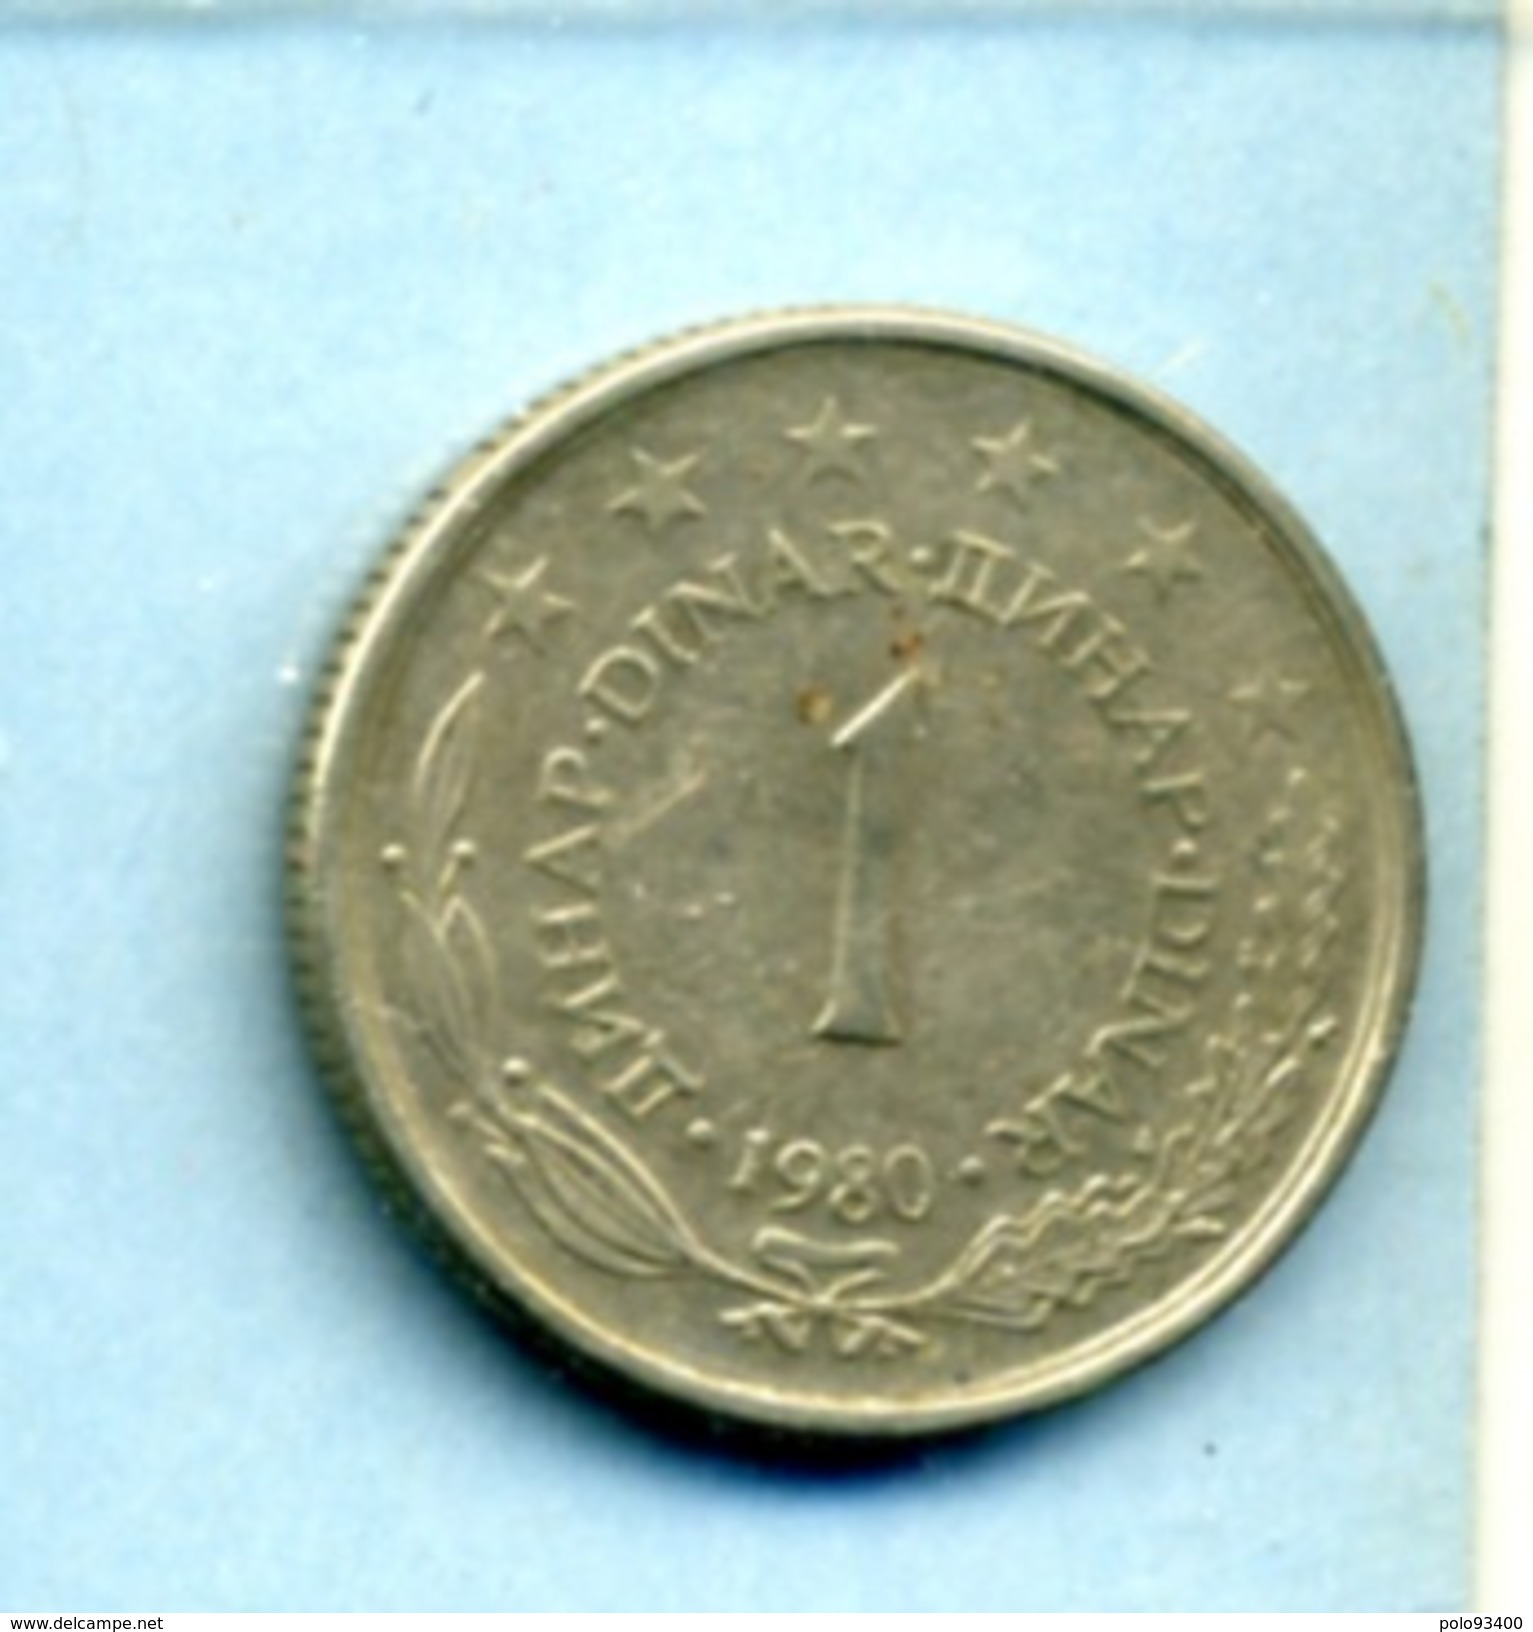 1980 1 DINAR - Yugoslavia